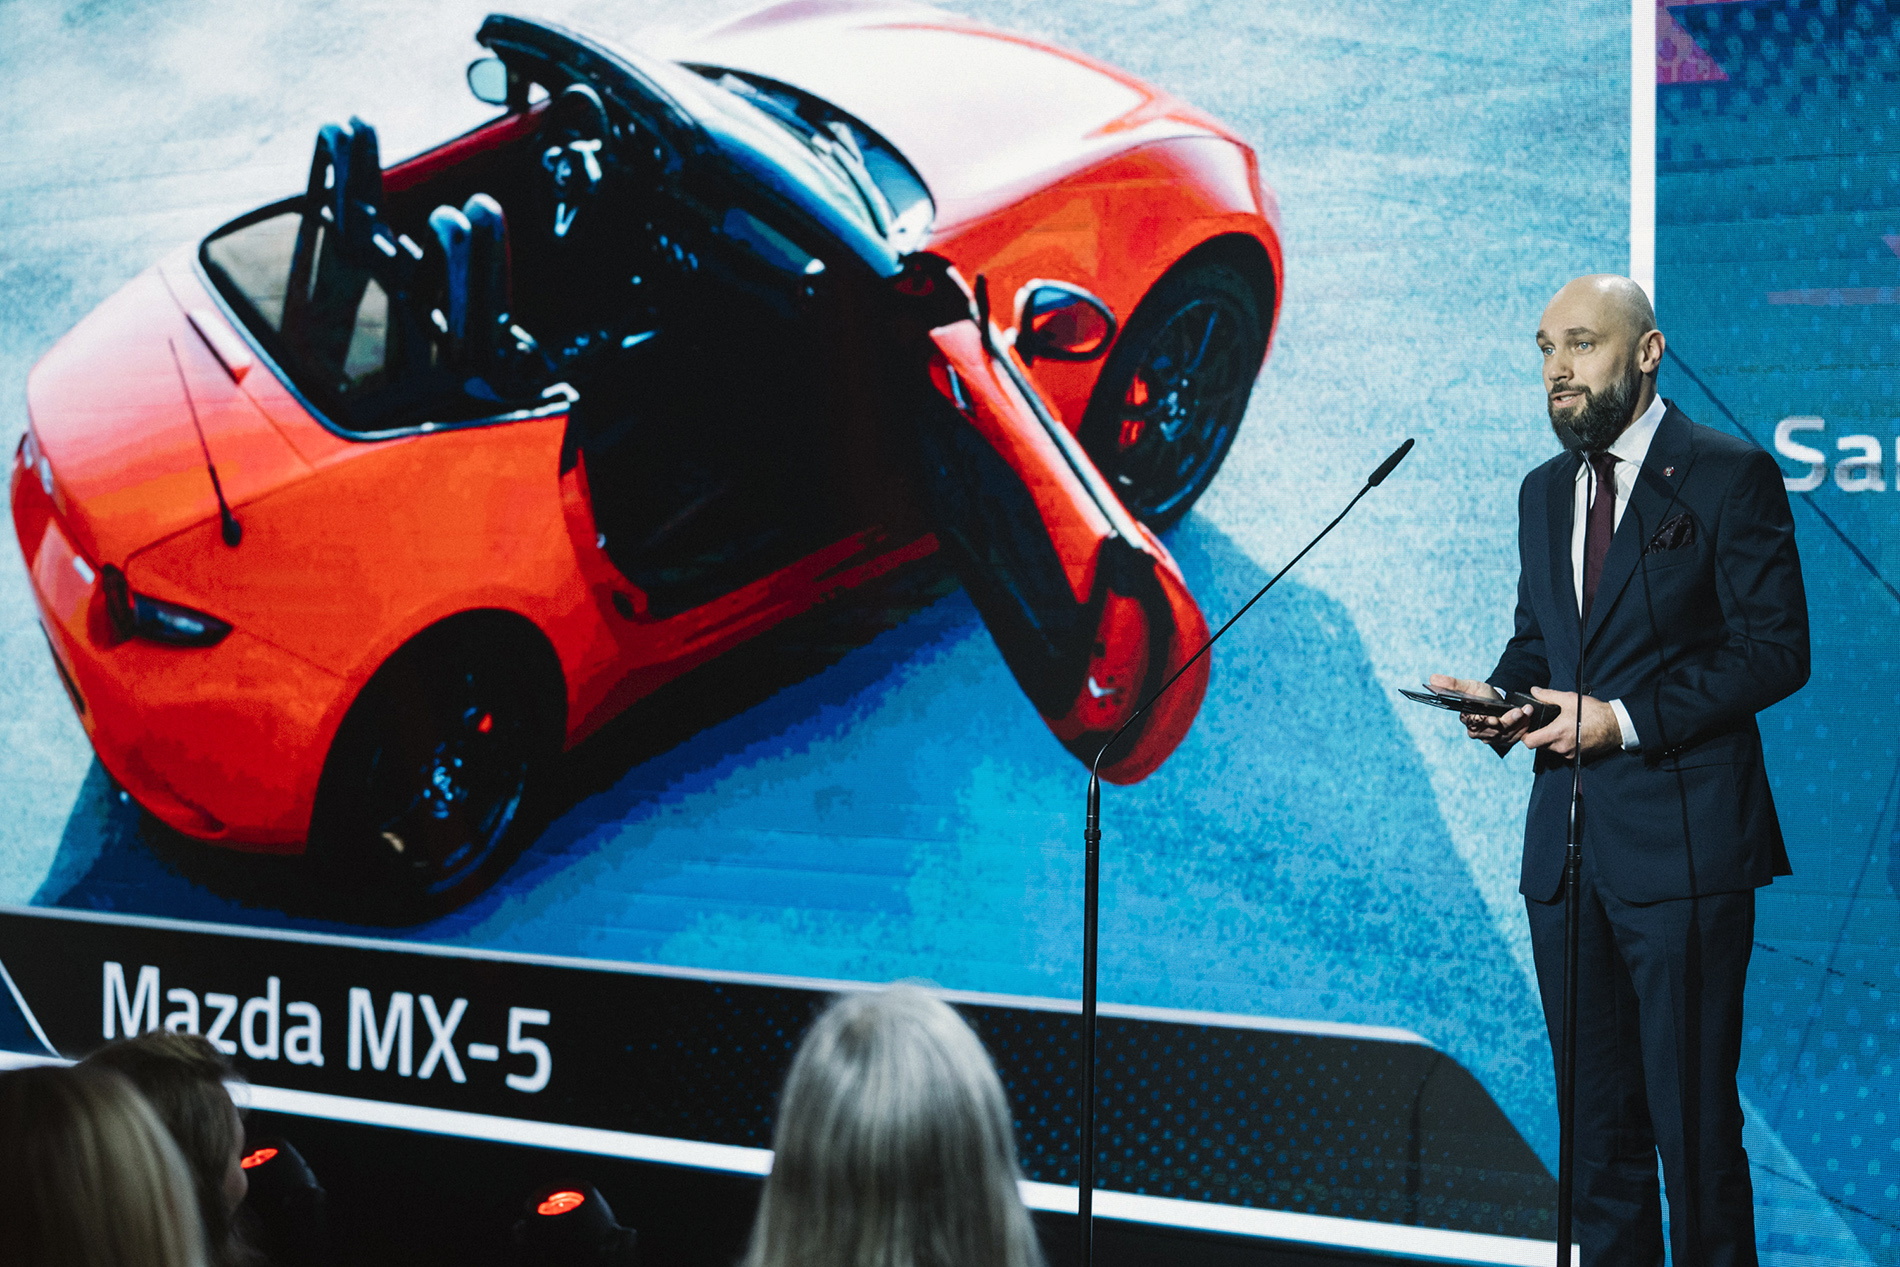 Mazda MX-5 samochodem legendą w plebiscycie The Best of Moto 2021